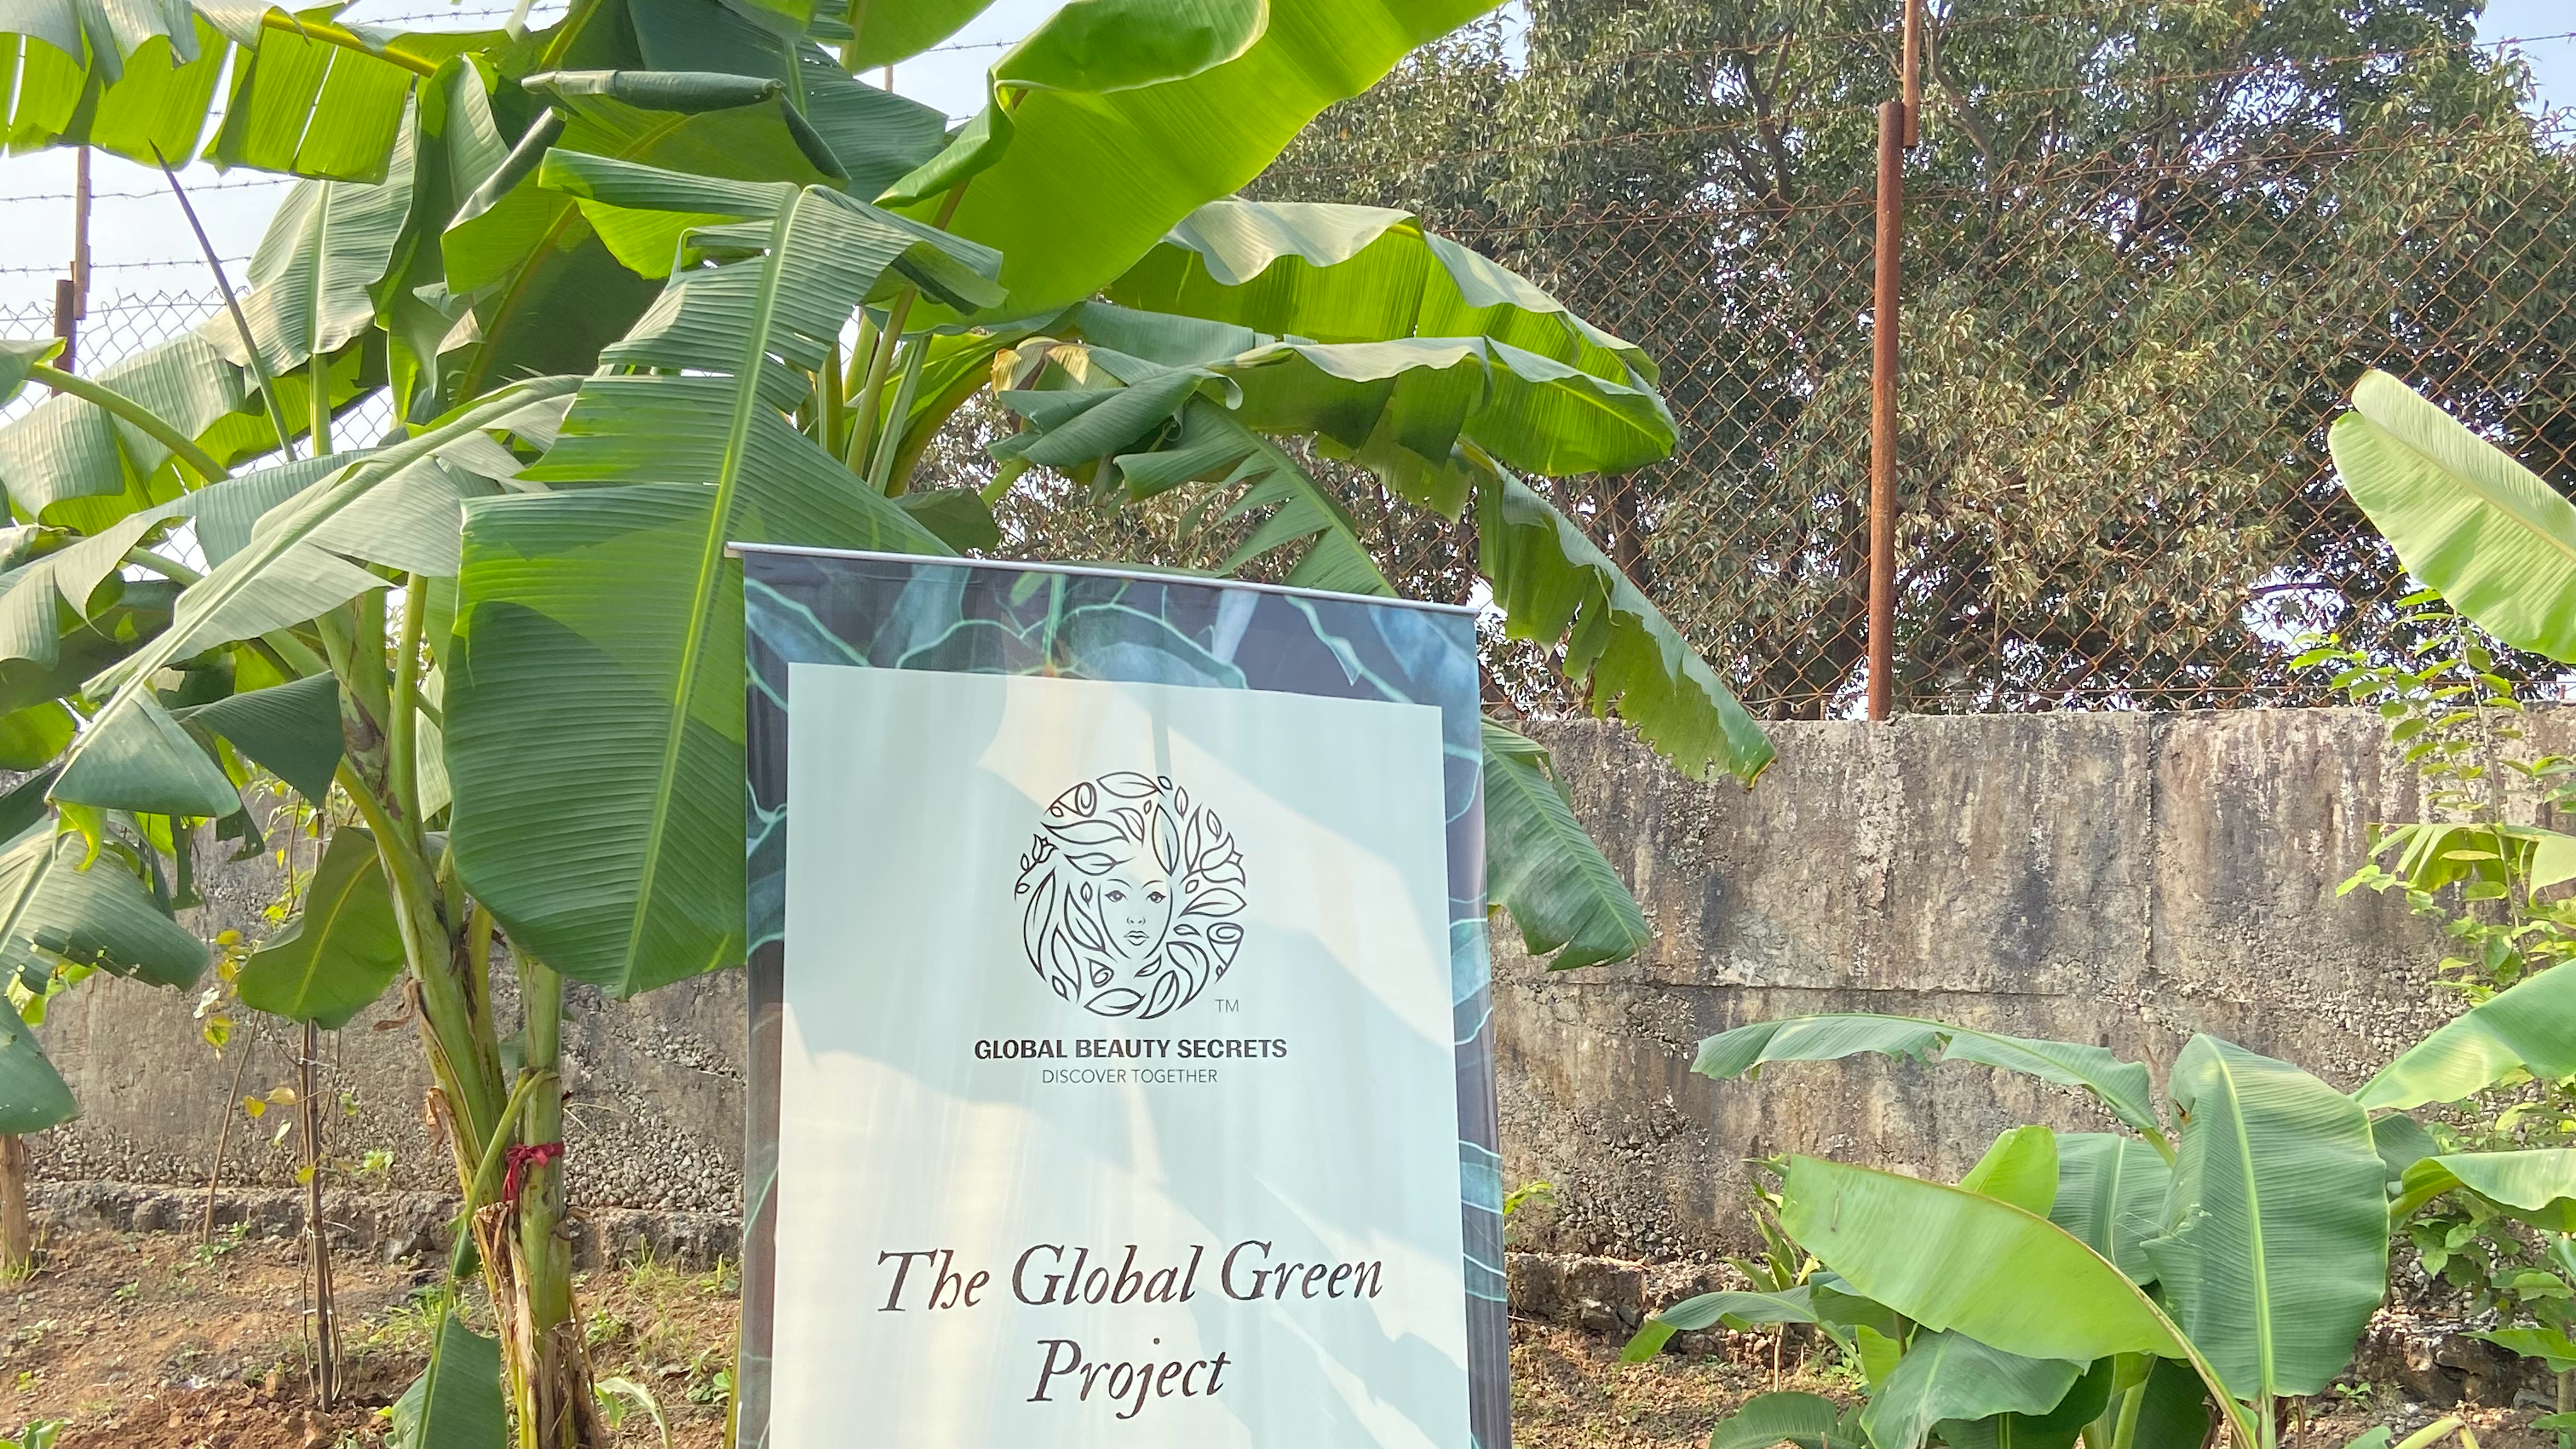  #GlobalGreen- Planting Trees at Marathawada 